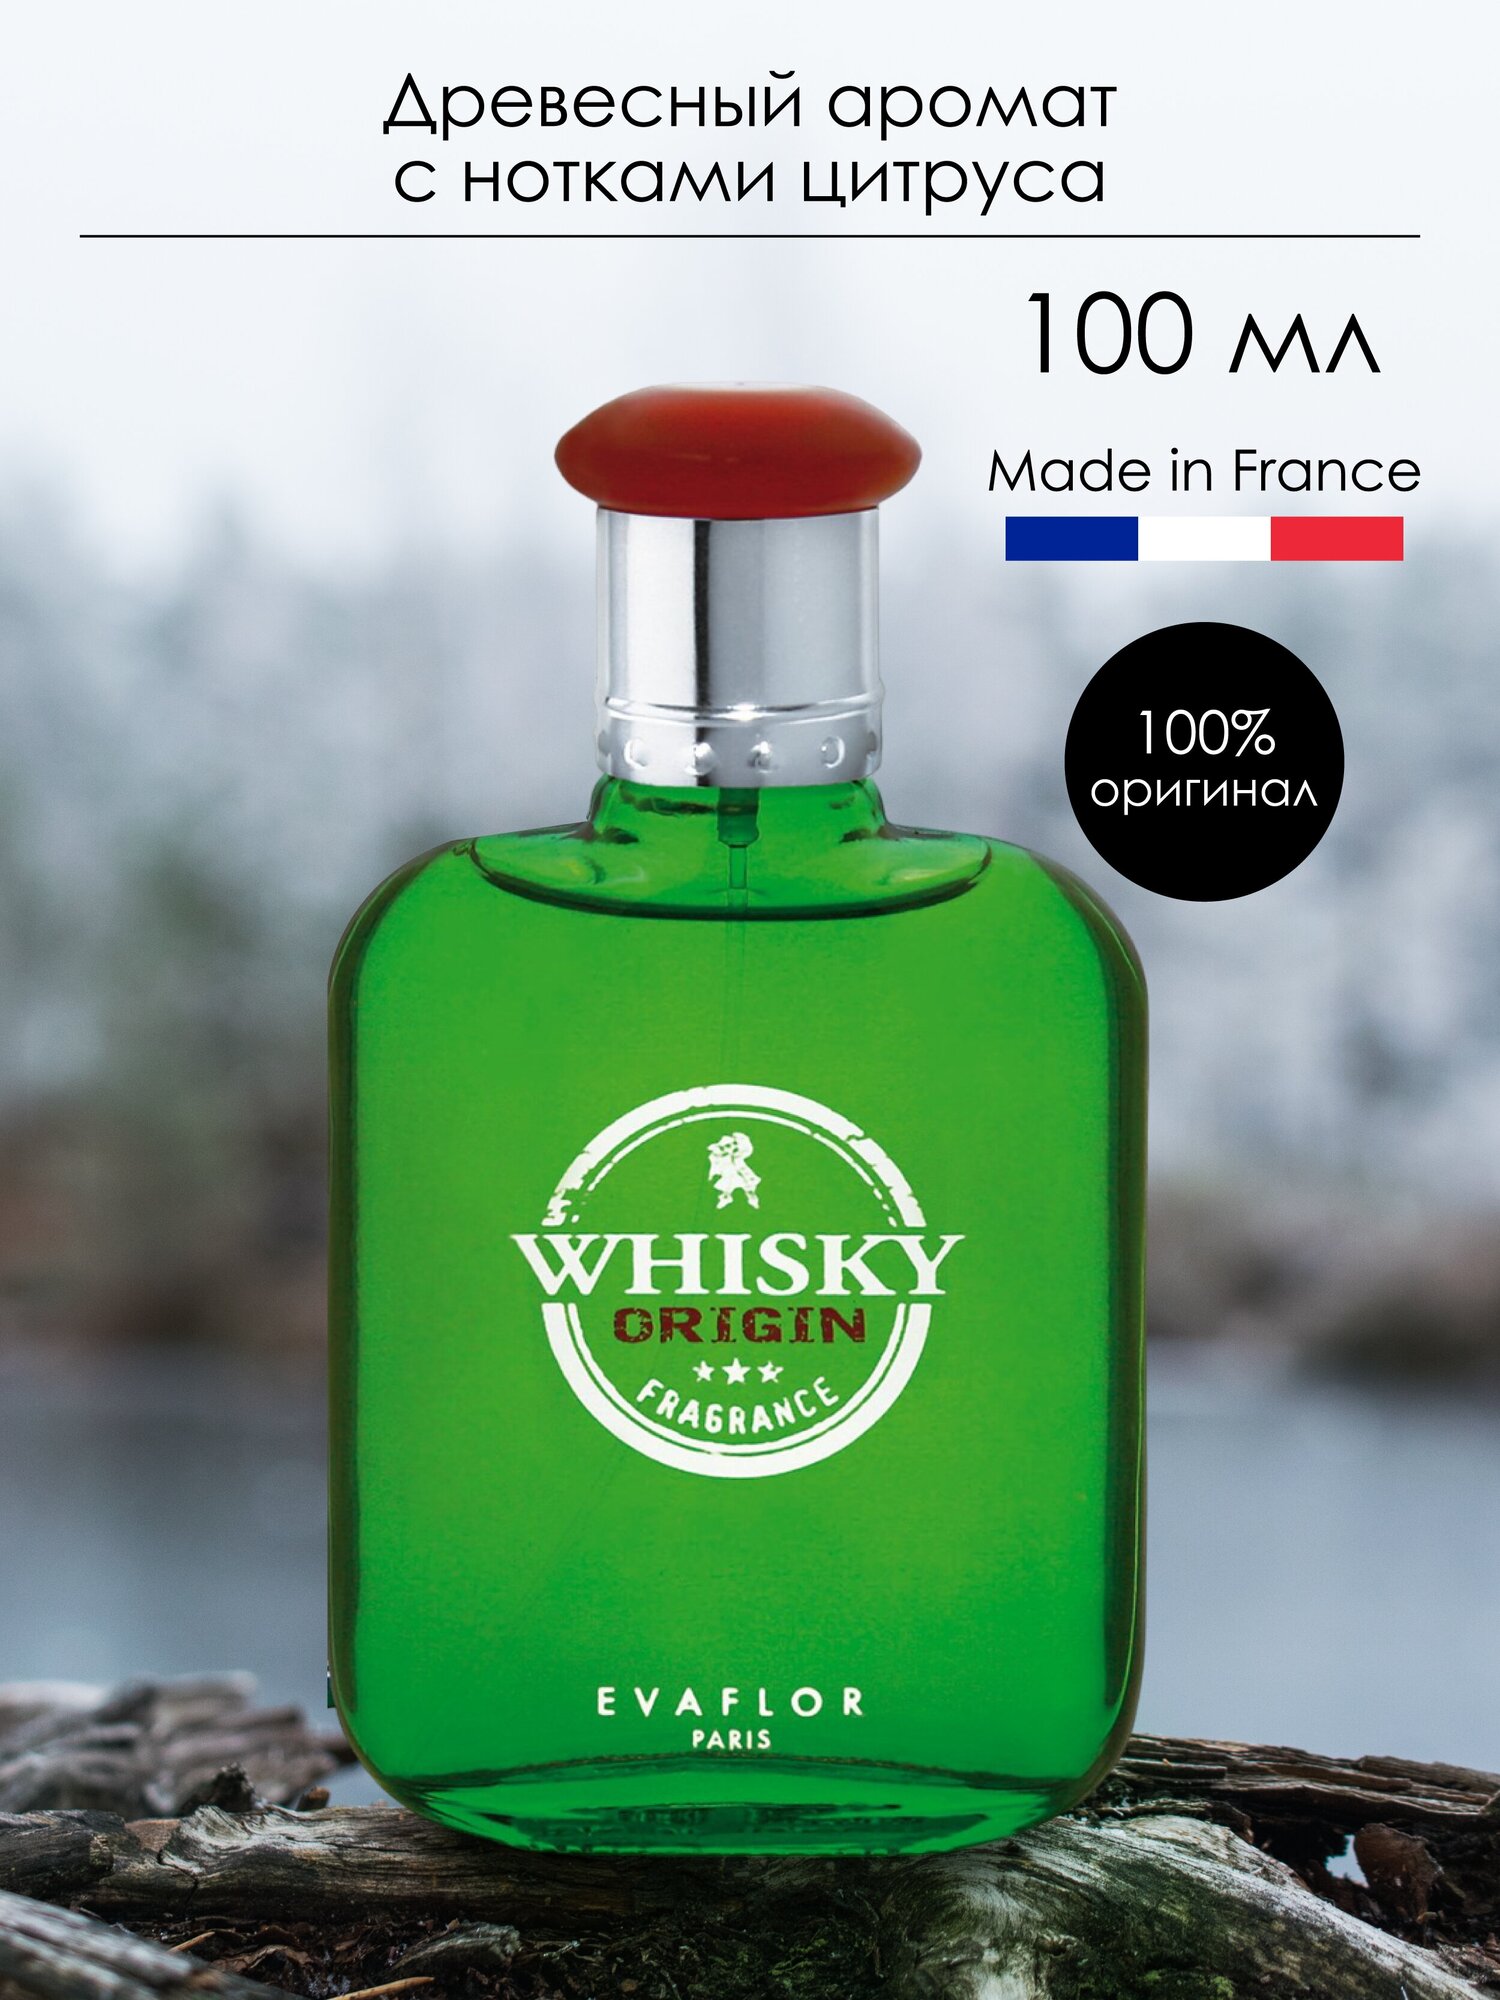 Evaflor туалетная вода Whisky Origin, 100 мл